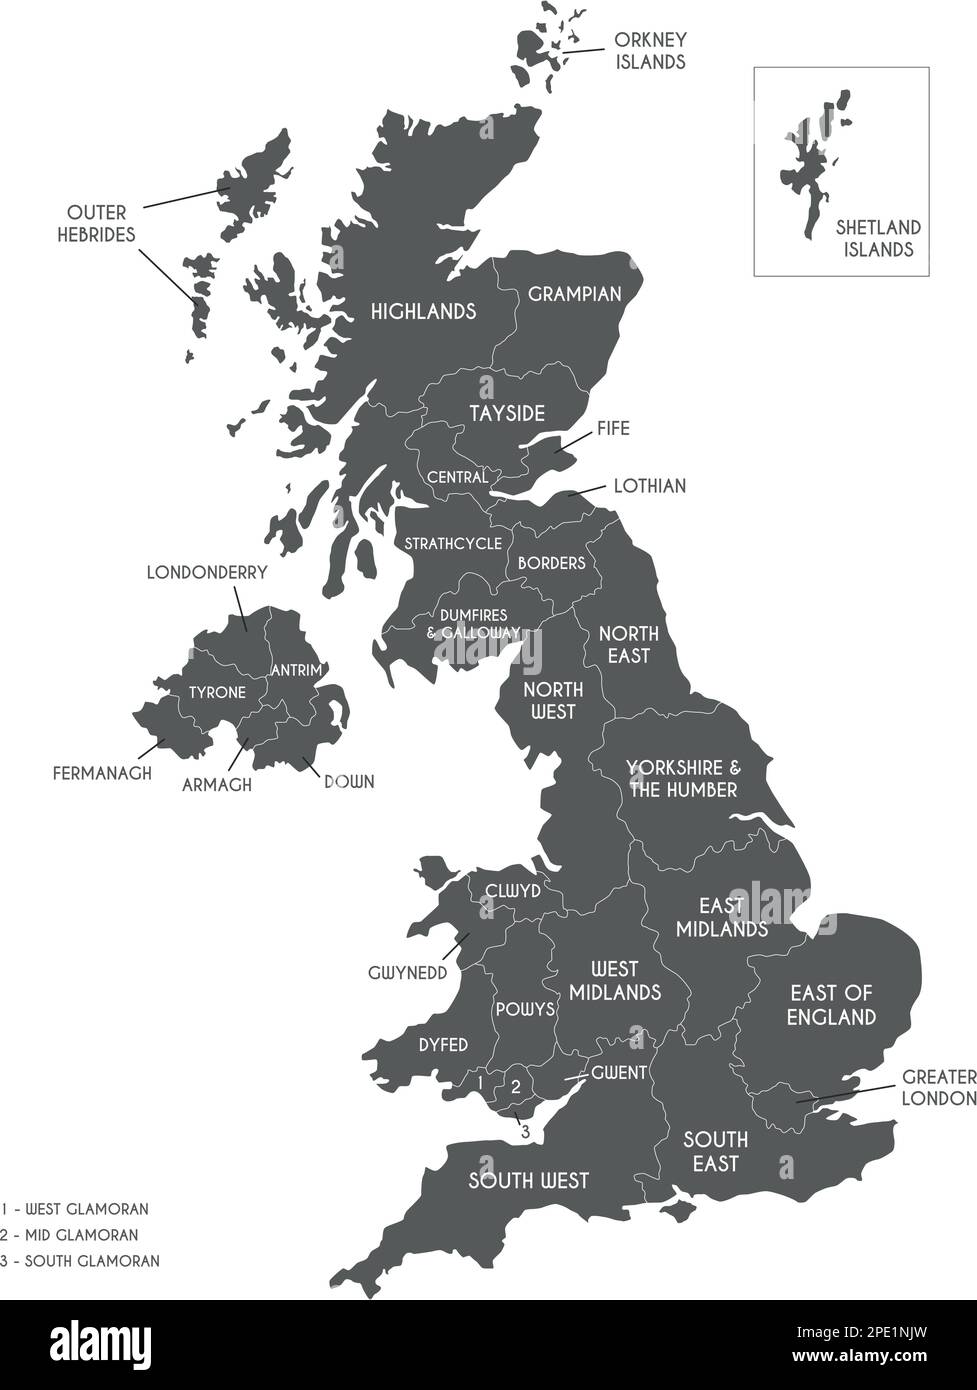 Mappa vettoriale del Regno Unito con divisioni amministrative. Livelli modificabili ed etichettati in modo chiaro. Illustrazione Vettoriale